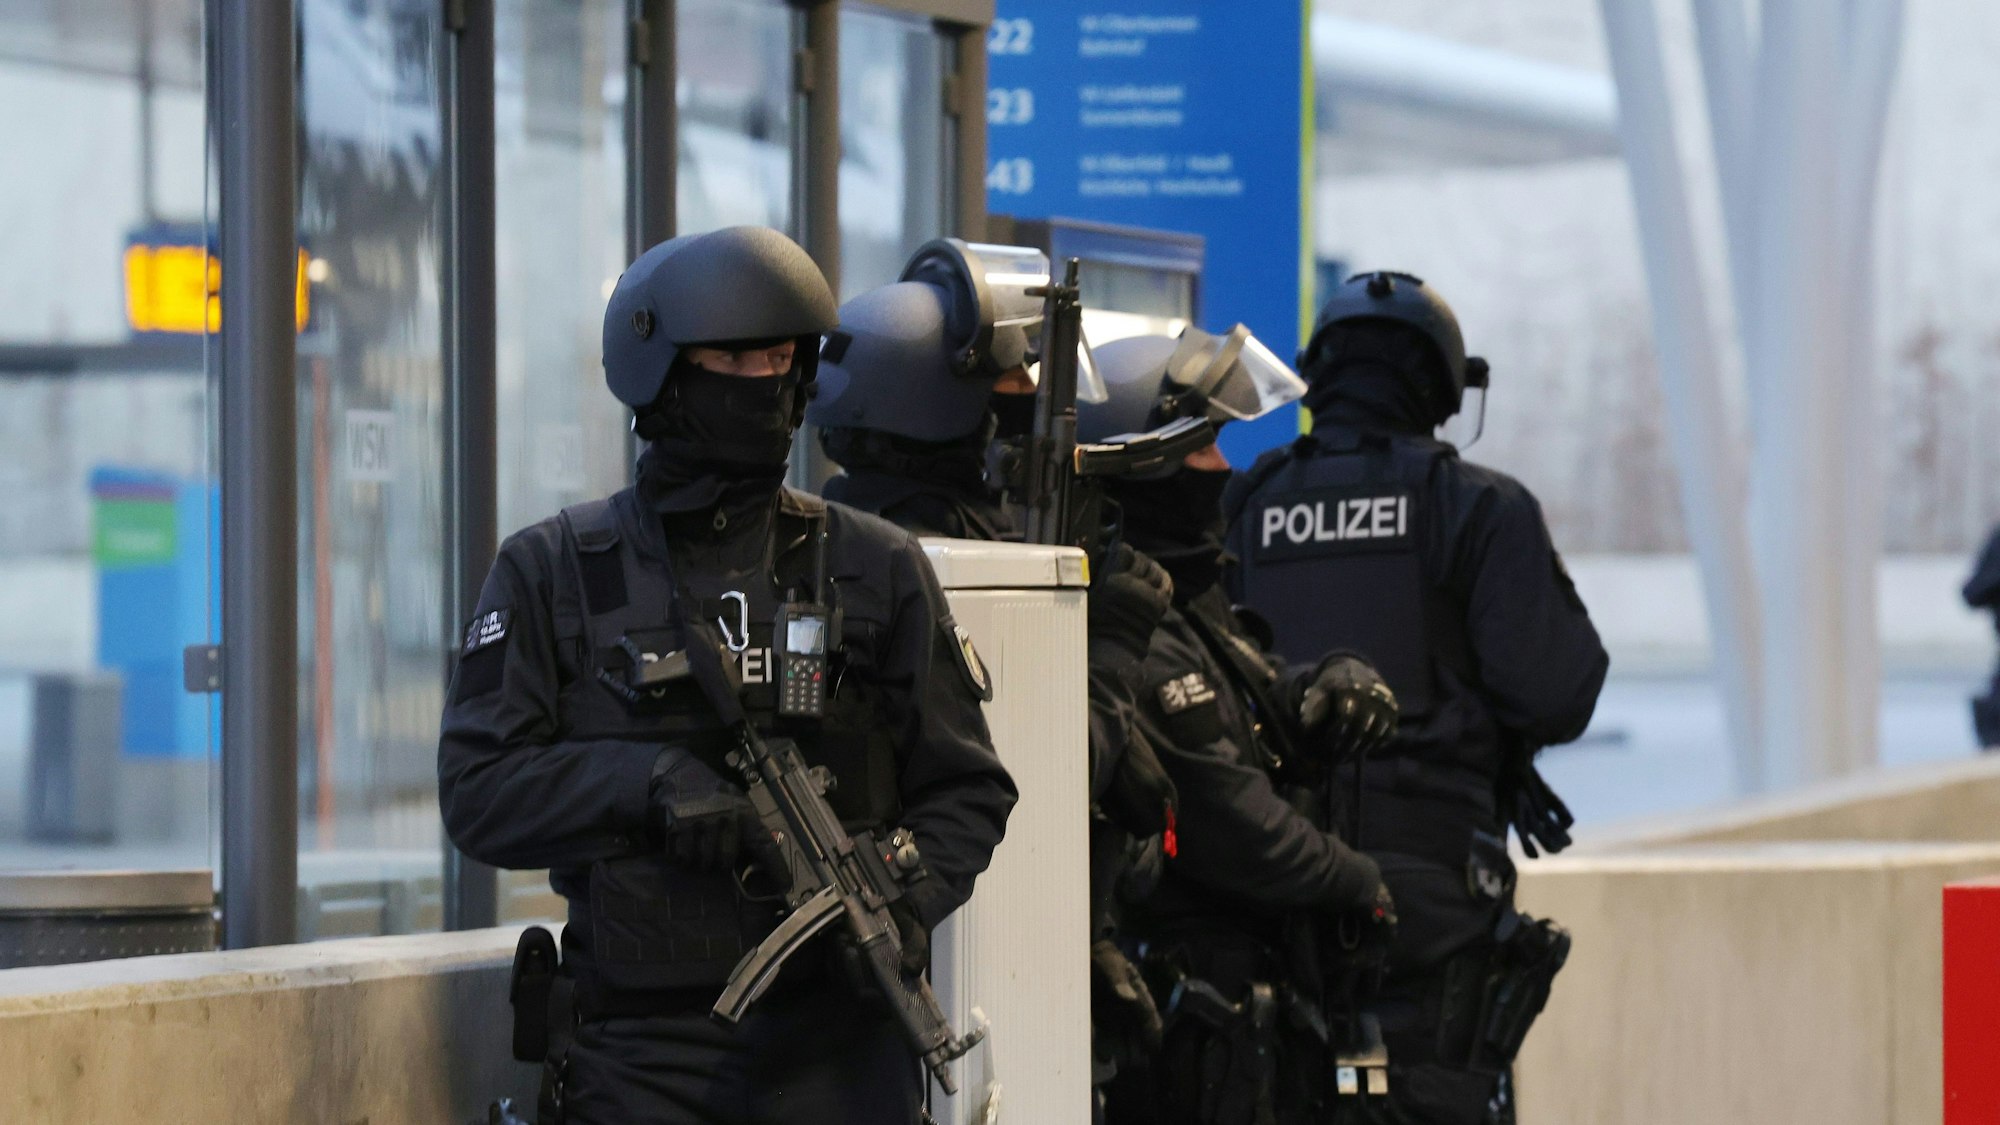 Die Polizei hat im Wuppertaler Hauptbahnhof einen größeren Einsatz gestartet, weil ein Zeuge das Ex-RAF-Mitglied Ernst-Volker Staub erkannt haben wollte. Am Ende stand fest, der Zeuge hatte sich getäuscht.